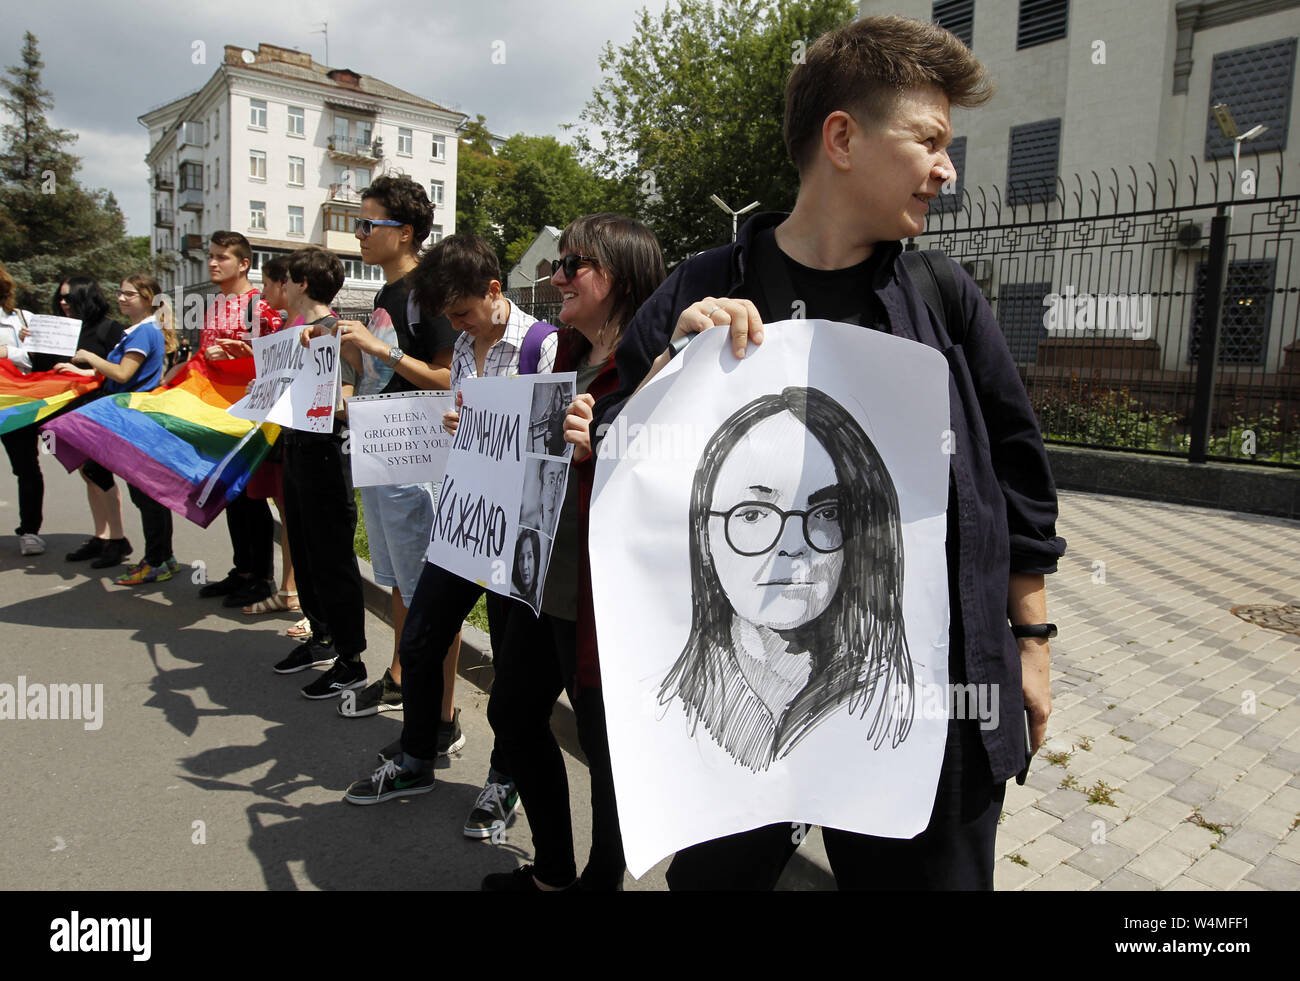 Kiew, Ukraine. 24. Juli, 2019. Ein Aktivist hält ein Plakat mit einem Bild von der LGBT-Rechte Aktivist Elena Grigoryeva, bei einer Rallye LGBT-Aktivisten mit der Nachfrage in Russland eine Untersuchung ihrer Ermordung, vor der Botschaft Russlands in Kiew, Ukraine, am 24. Juli 2019. Der 41-jährige LGBT-Rechte Aktivist Elena Grigoryeva tot war mit mehreren Schnittwunden in St. Petersburg in Russland am Sonntag, die von den Medien berichtet. LGBT-Rechte Aktivist Elena Grigorieva waren oft die Teilnahme an Kundgebungen von der Allianz der Heterosexuellen und LGBT-Bündnis und andere zivile Initiativen stattfinden, für den Rechten befürwortet Stockfoto